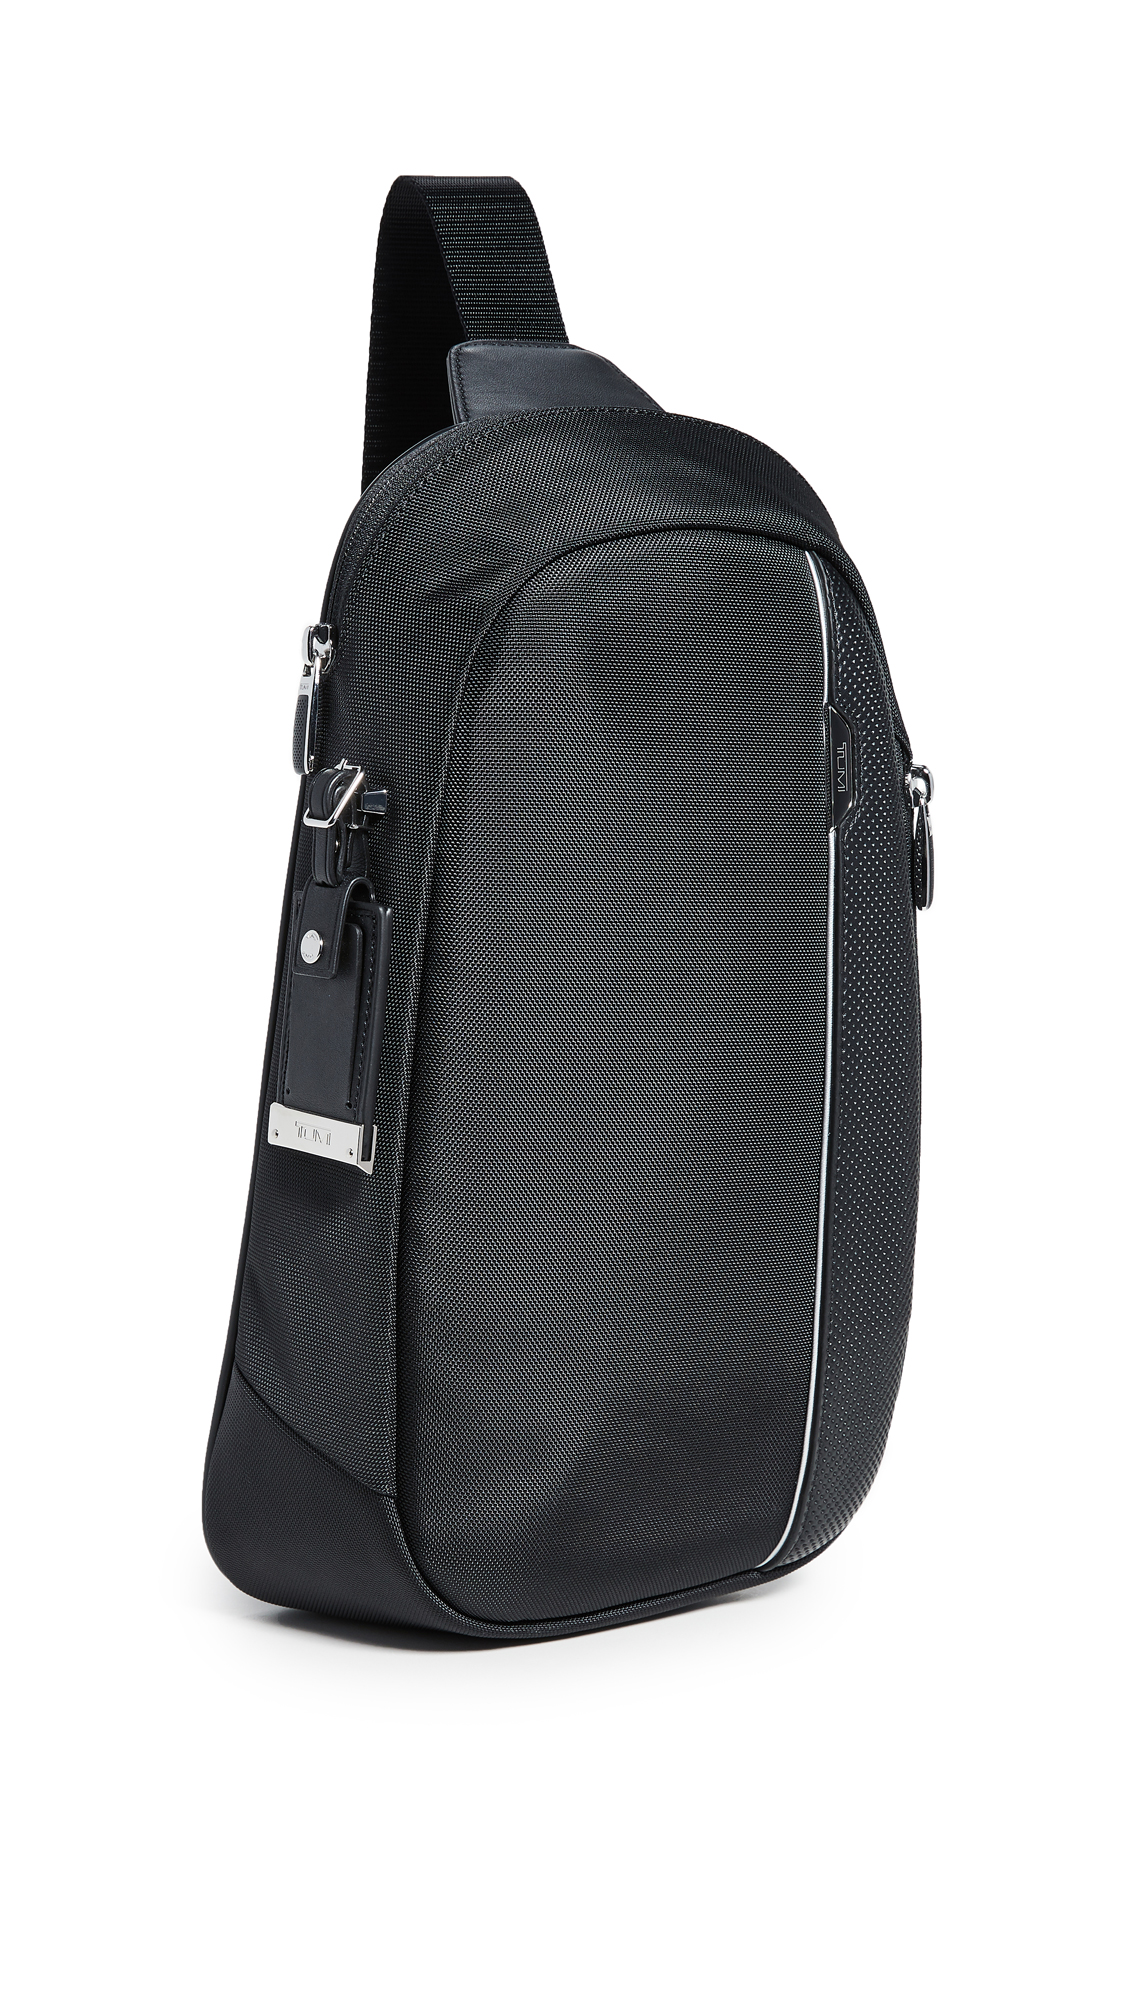 TUMI Men's Martin Sling Bag, Black, One Size